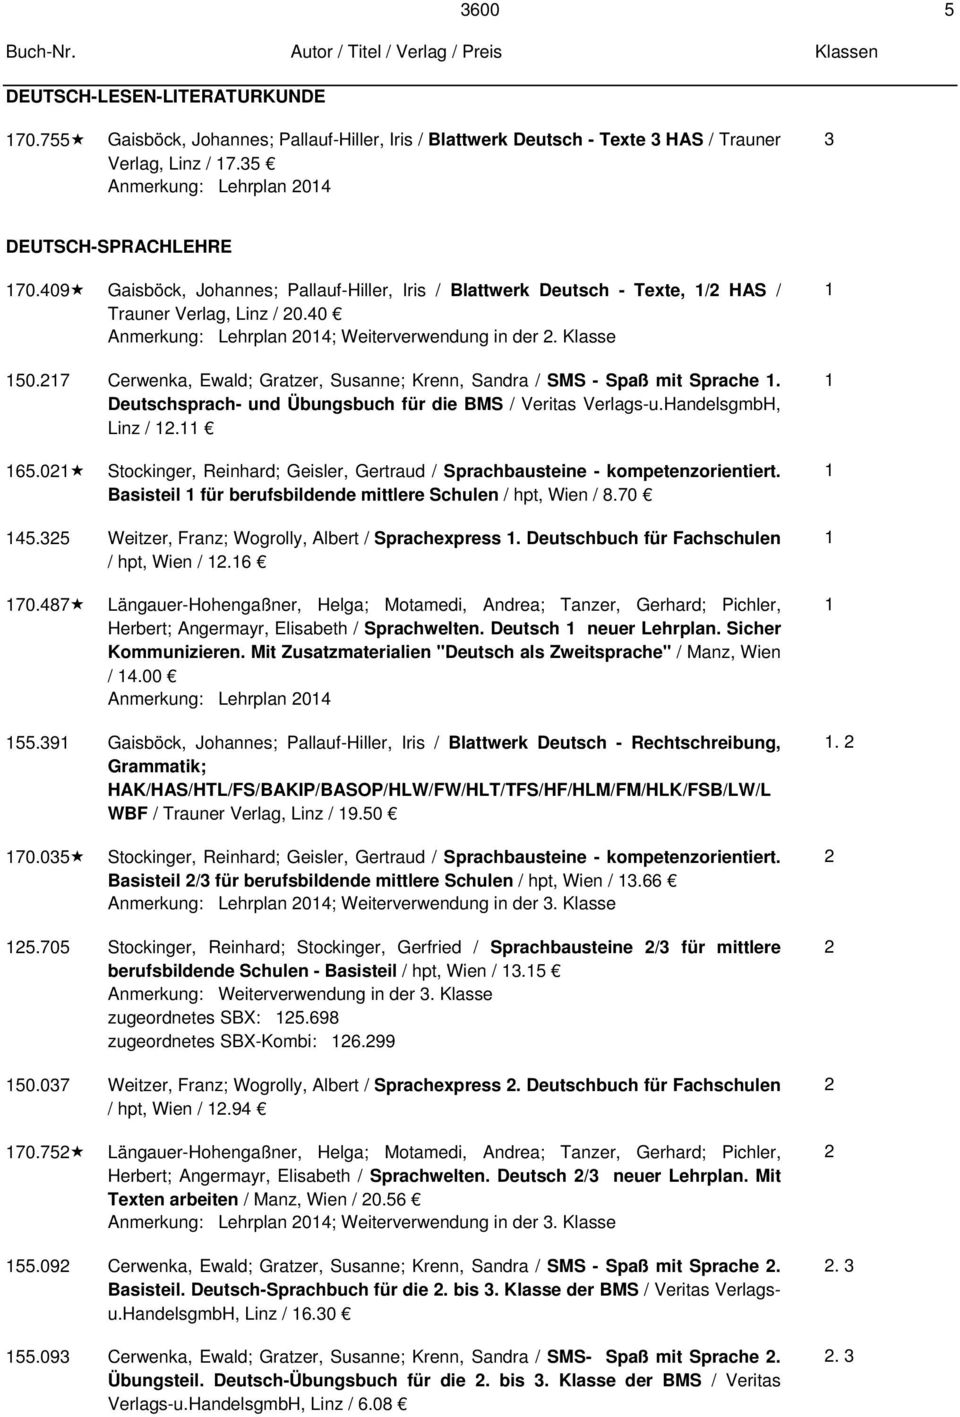 7 Cerwenka, Ewald; Gratzer, Susanne; Krenn, Sandra / SMS - Spaß mit Sprache. Deutschsprach- und Übungsbuch für die BMS / Veritas Verlags-u.HandelsgmbH, Linz /. 65.